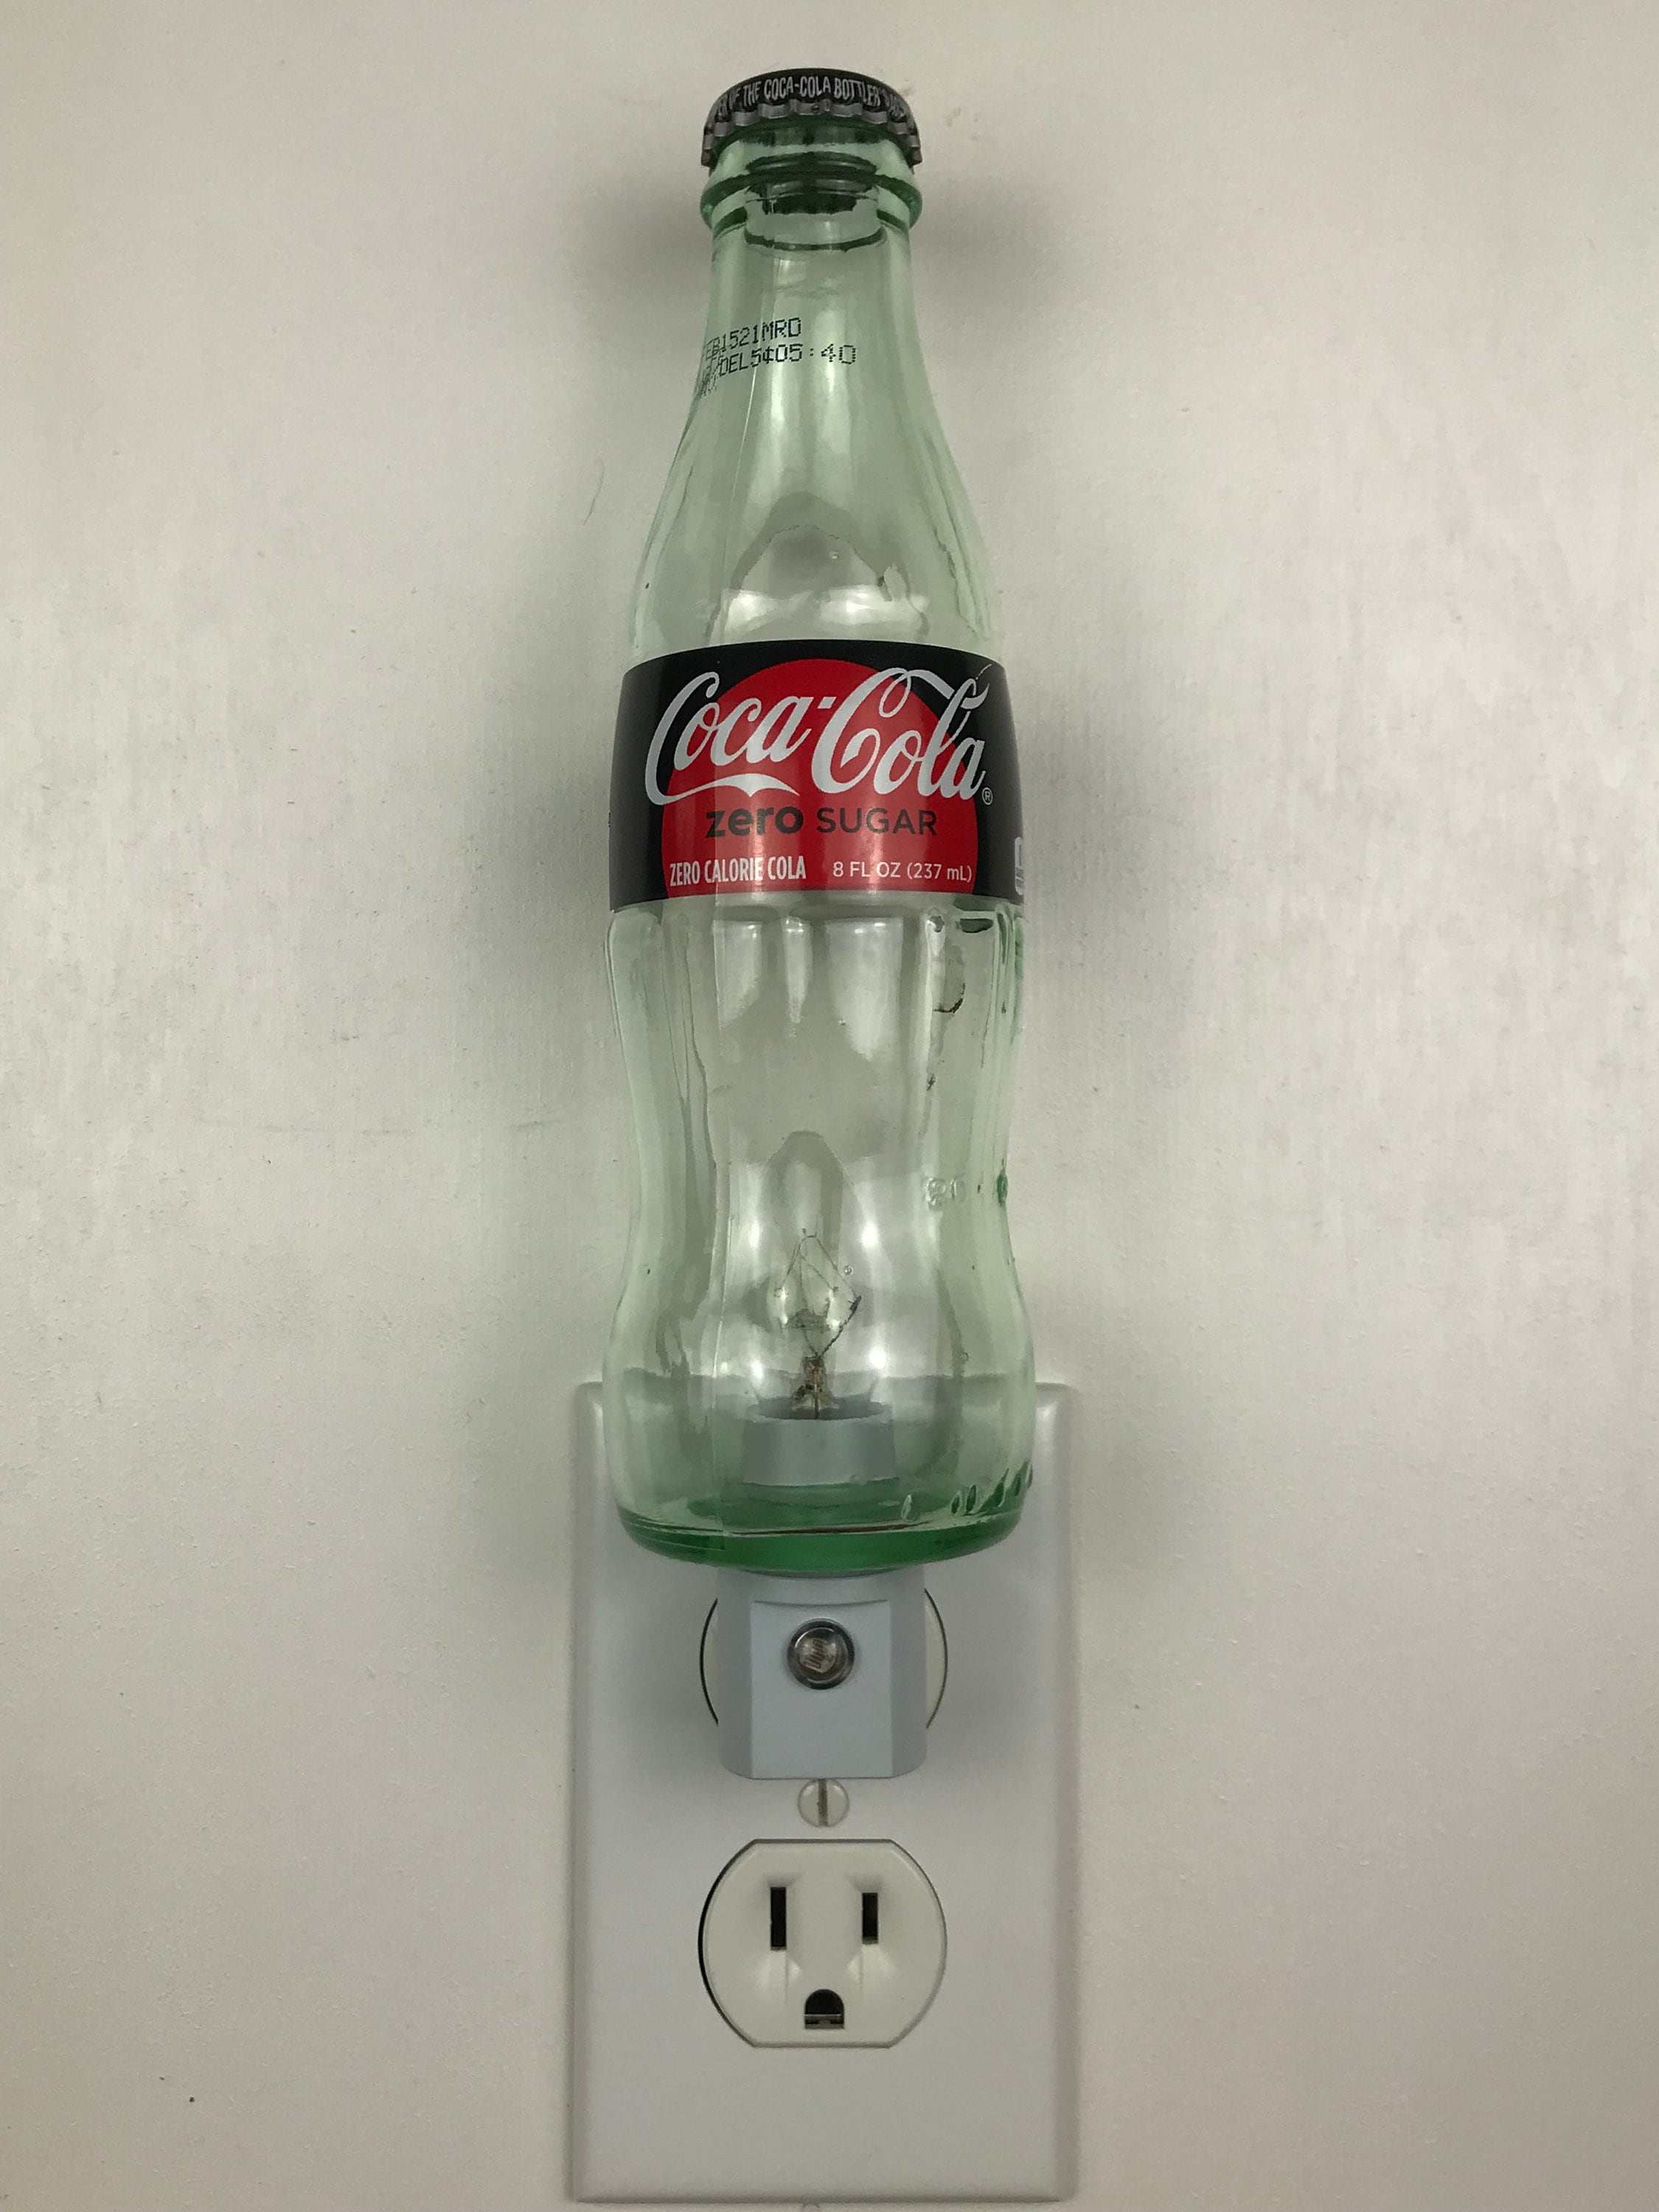 Coca-Cola Zero botella - Sushilight